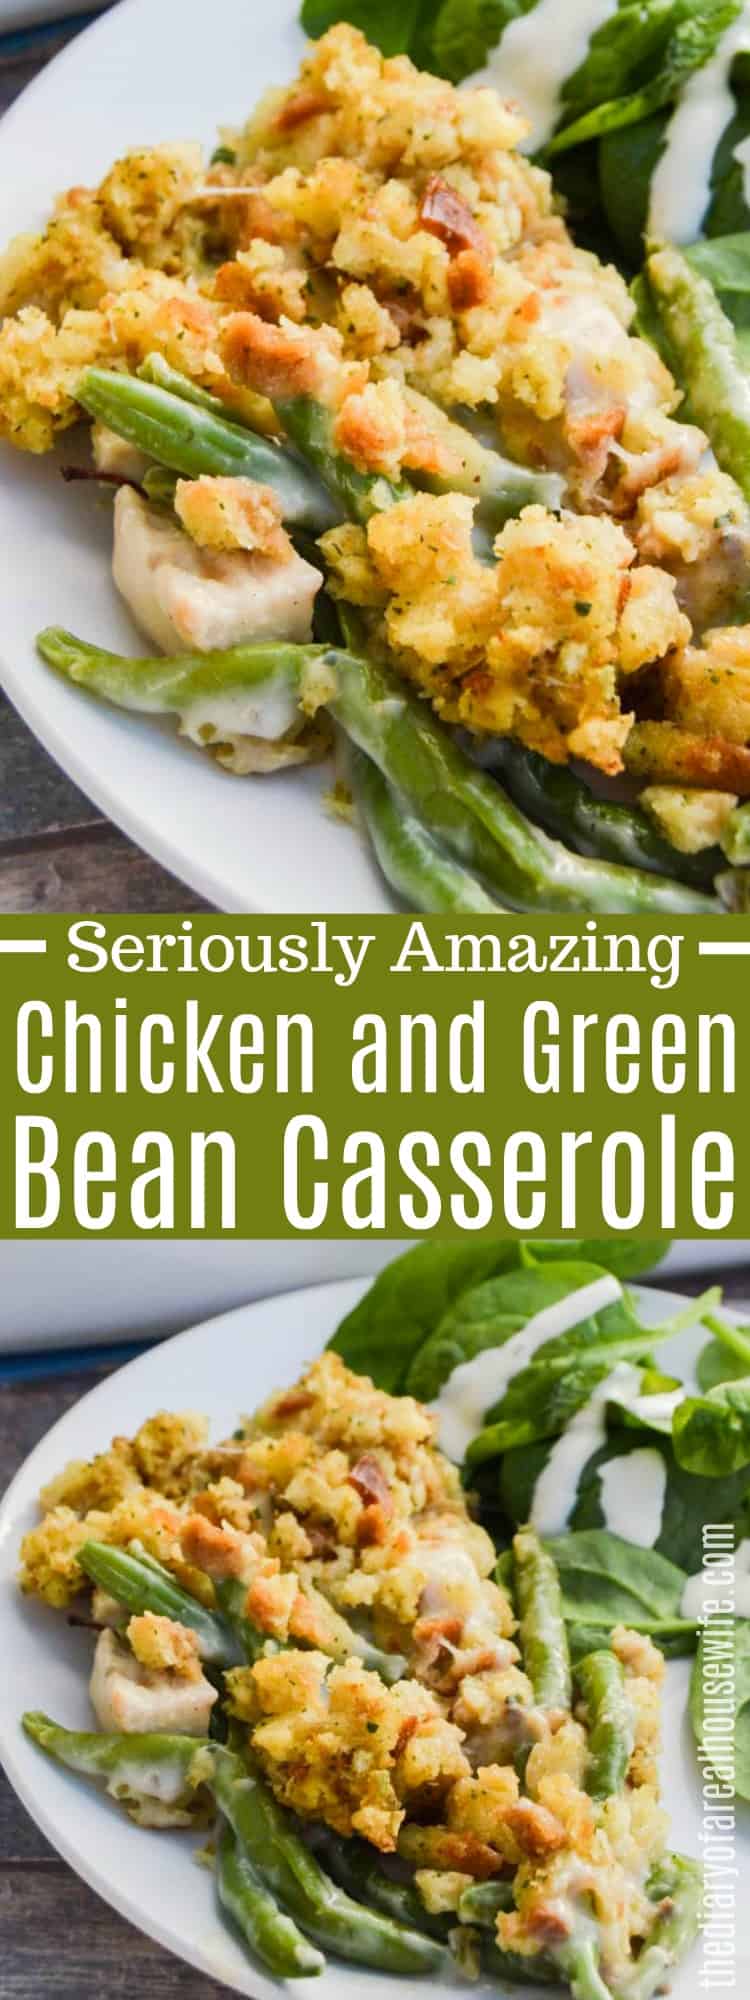 Chicken and Green Bean Casserole